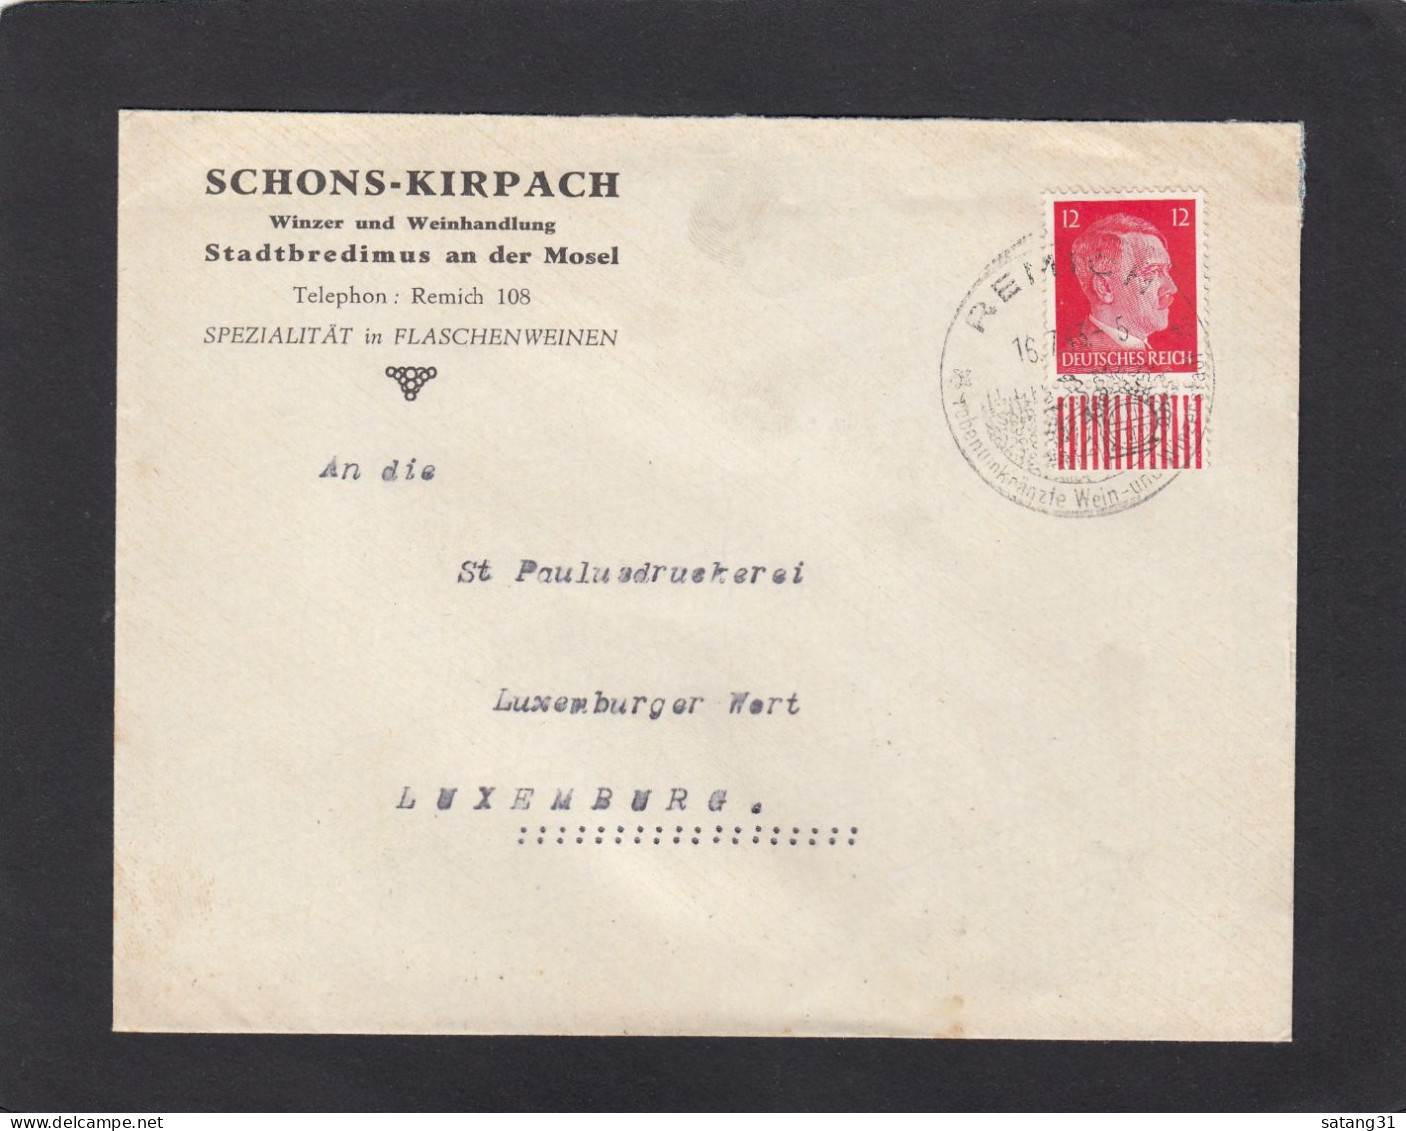 SCHONS - KIRPACH, WINZER UND WEINHANDLUNG, STADTBREDIMUS. - 1940-1944 Deutsche Besatzung